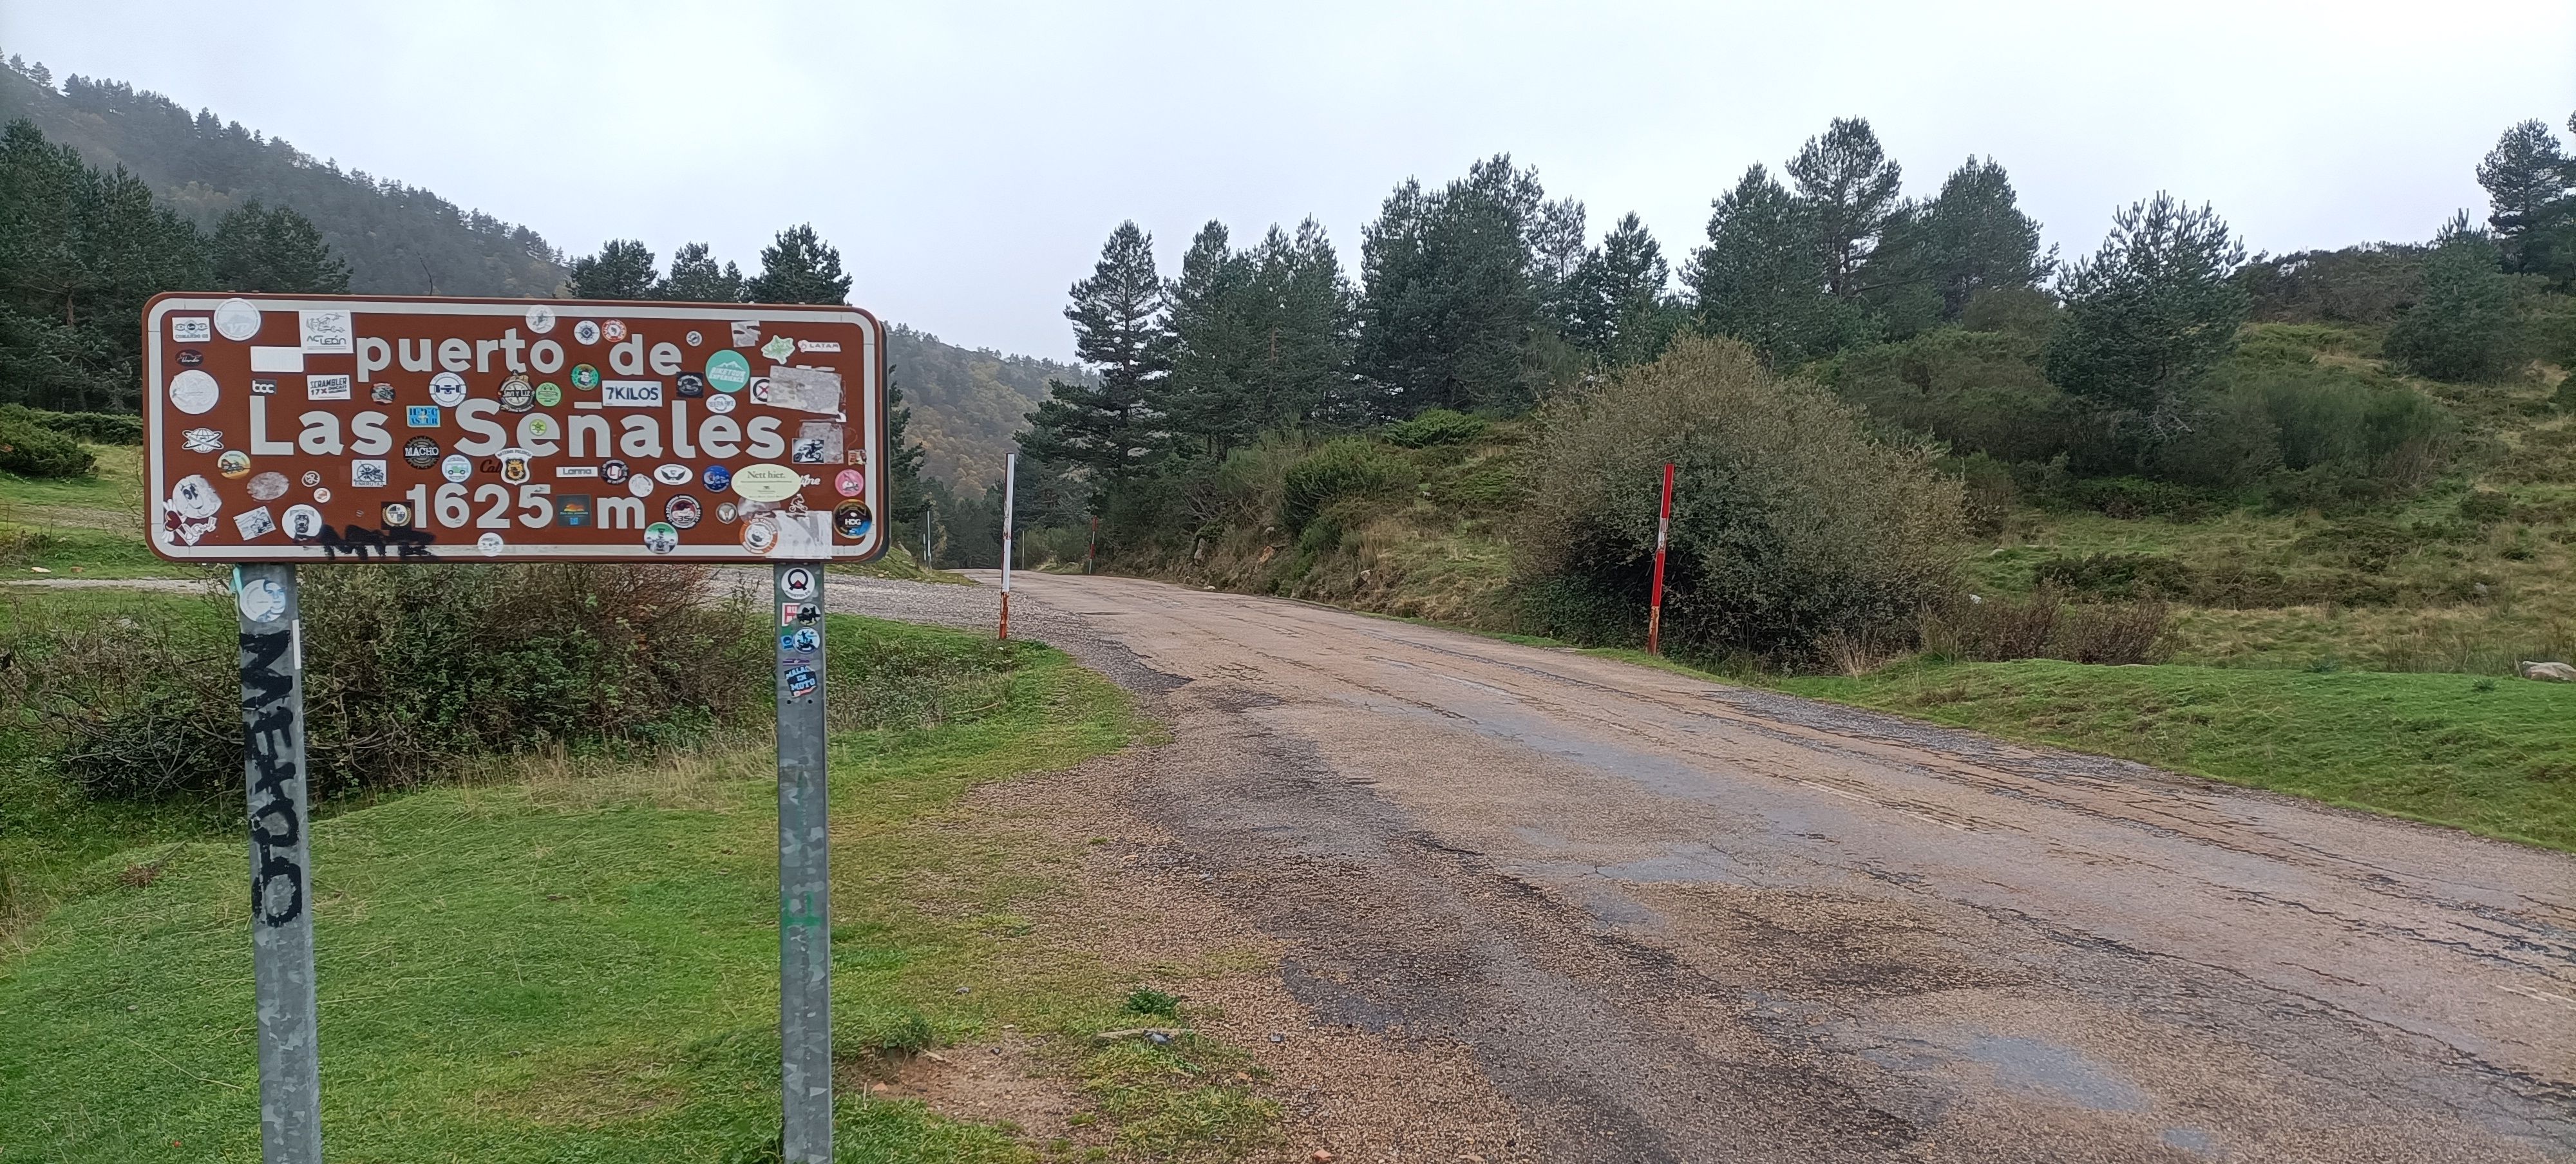 Estado de la carretera en el Puerto de las Señales.